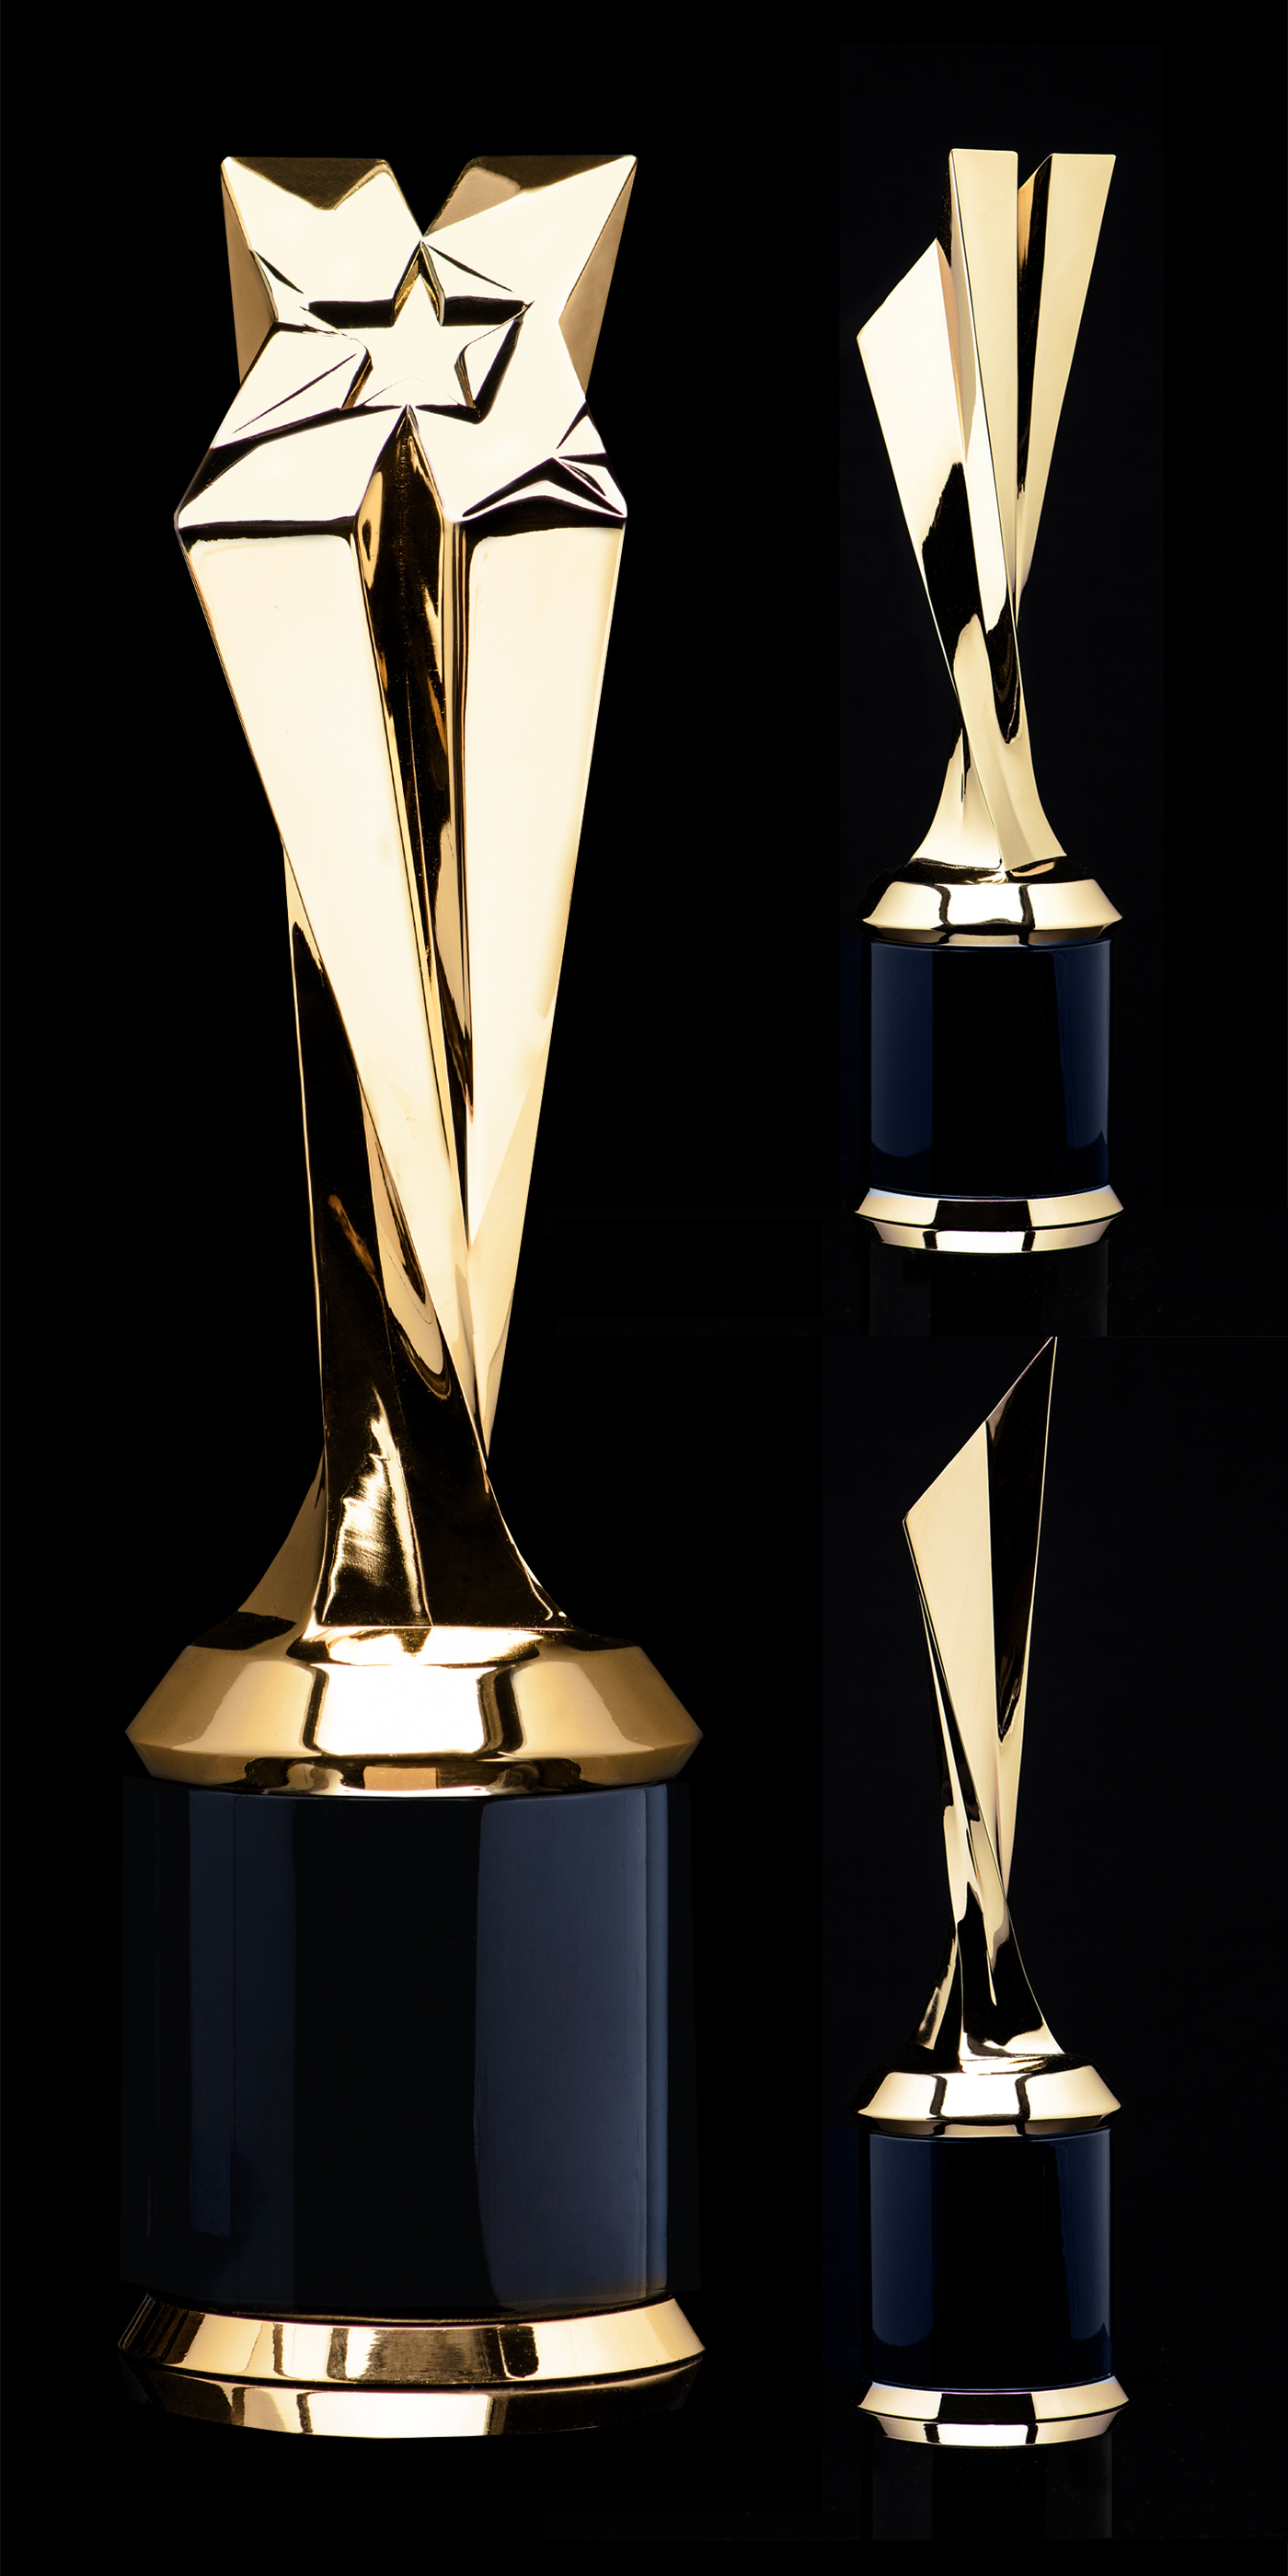 New XBIZ Awards trophy side views